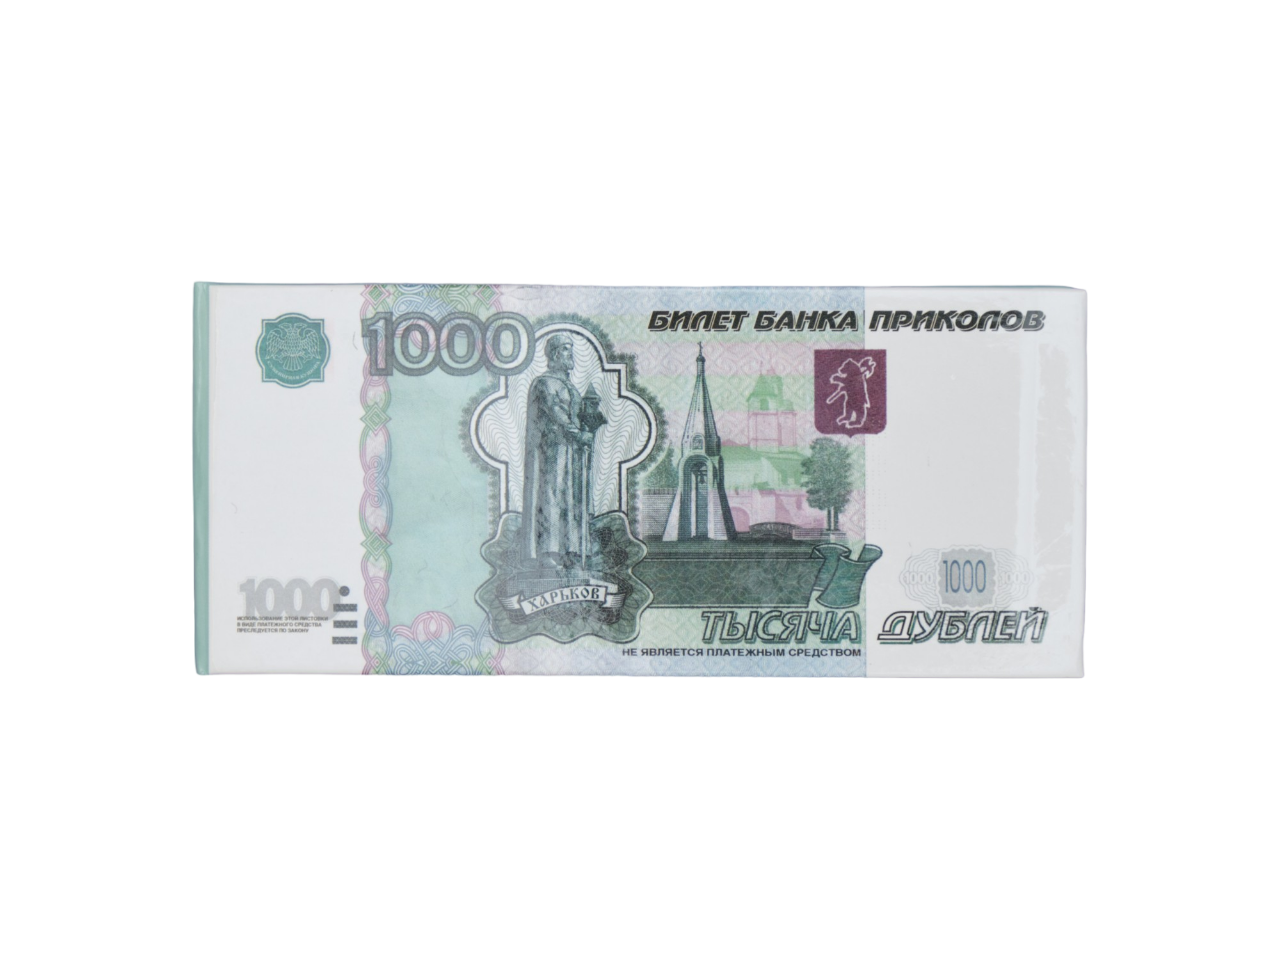 Отрывной блокнот-визитка Филькина грамота OV00000026 пачка денег 1000 рублей